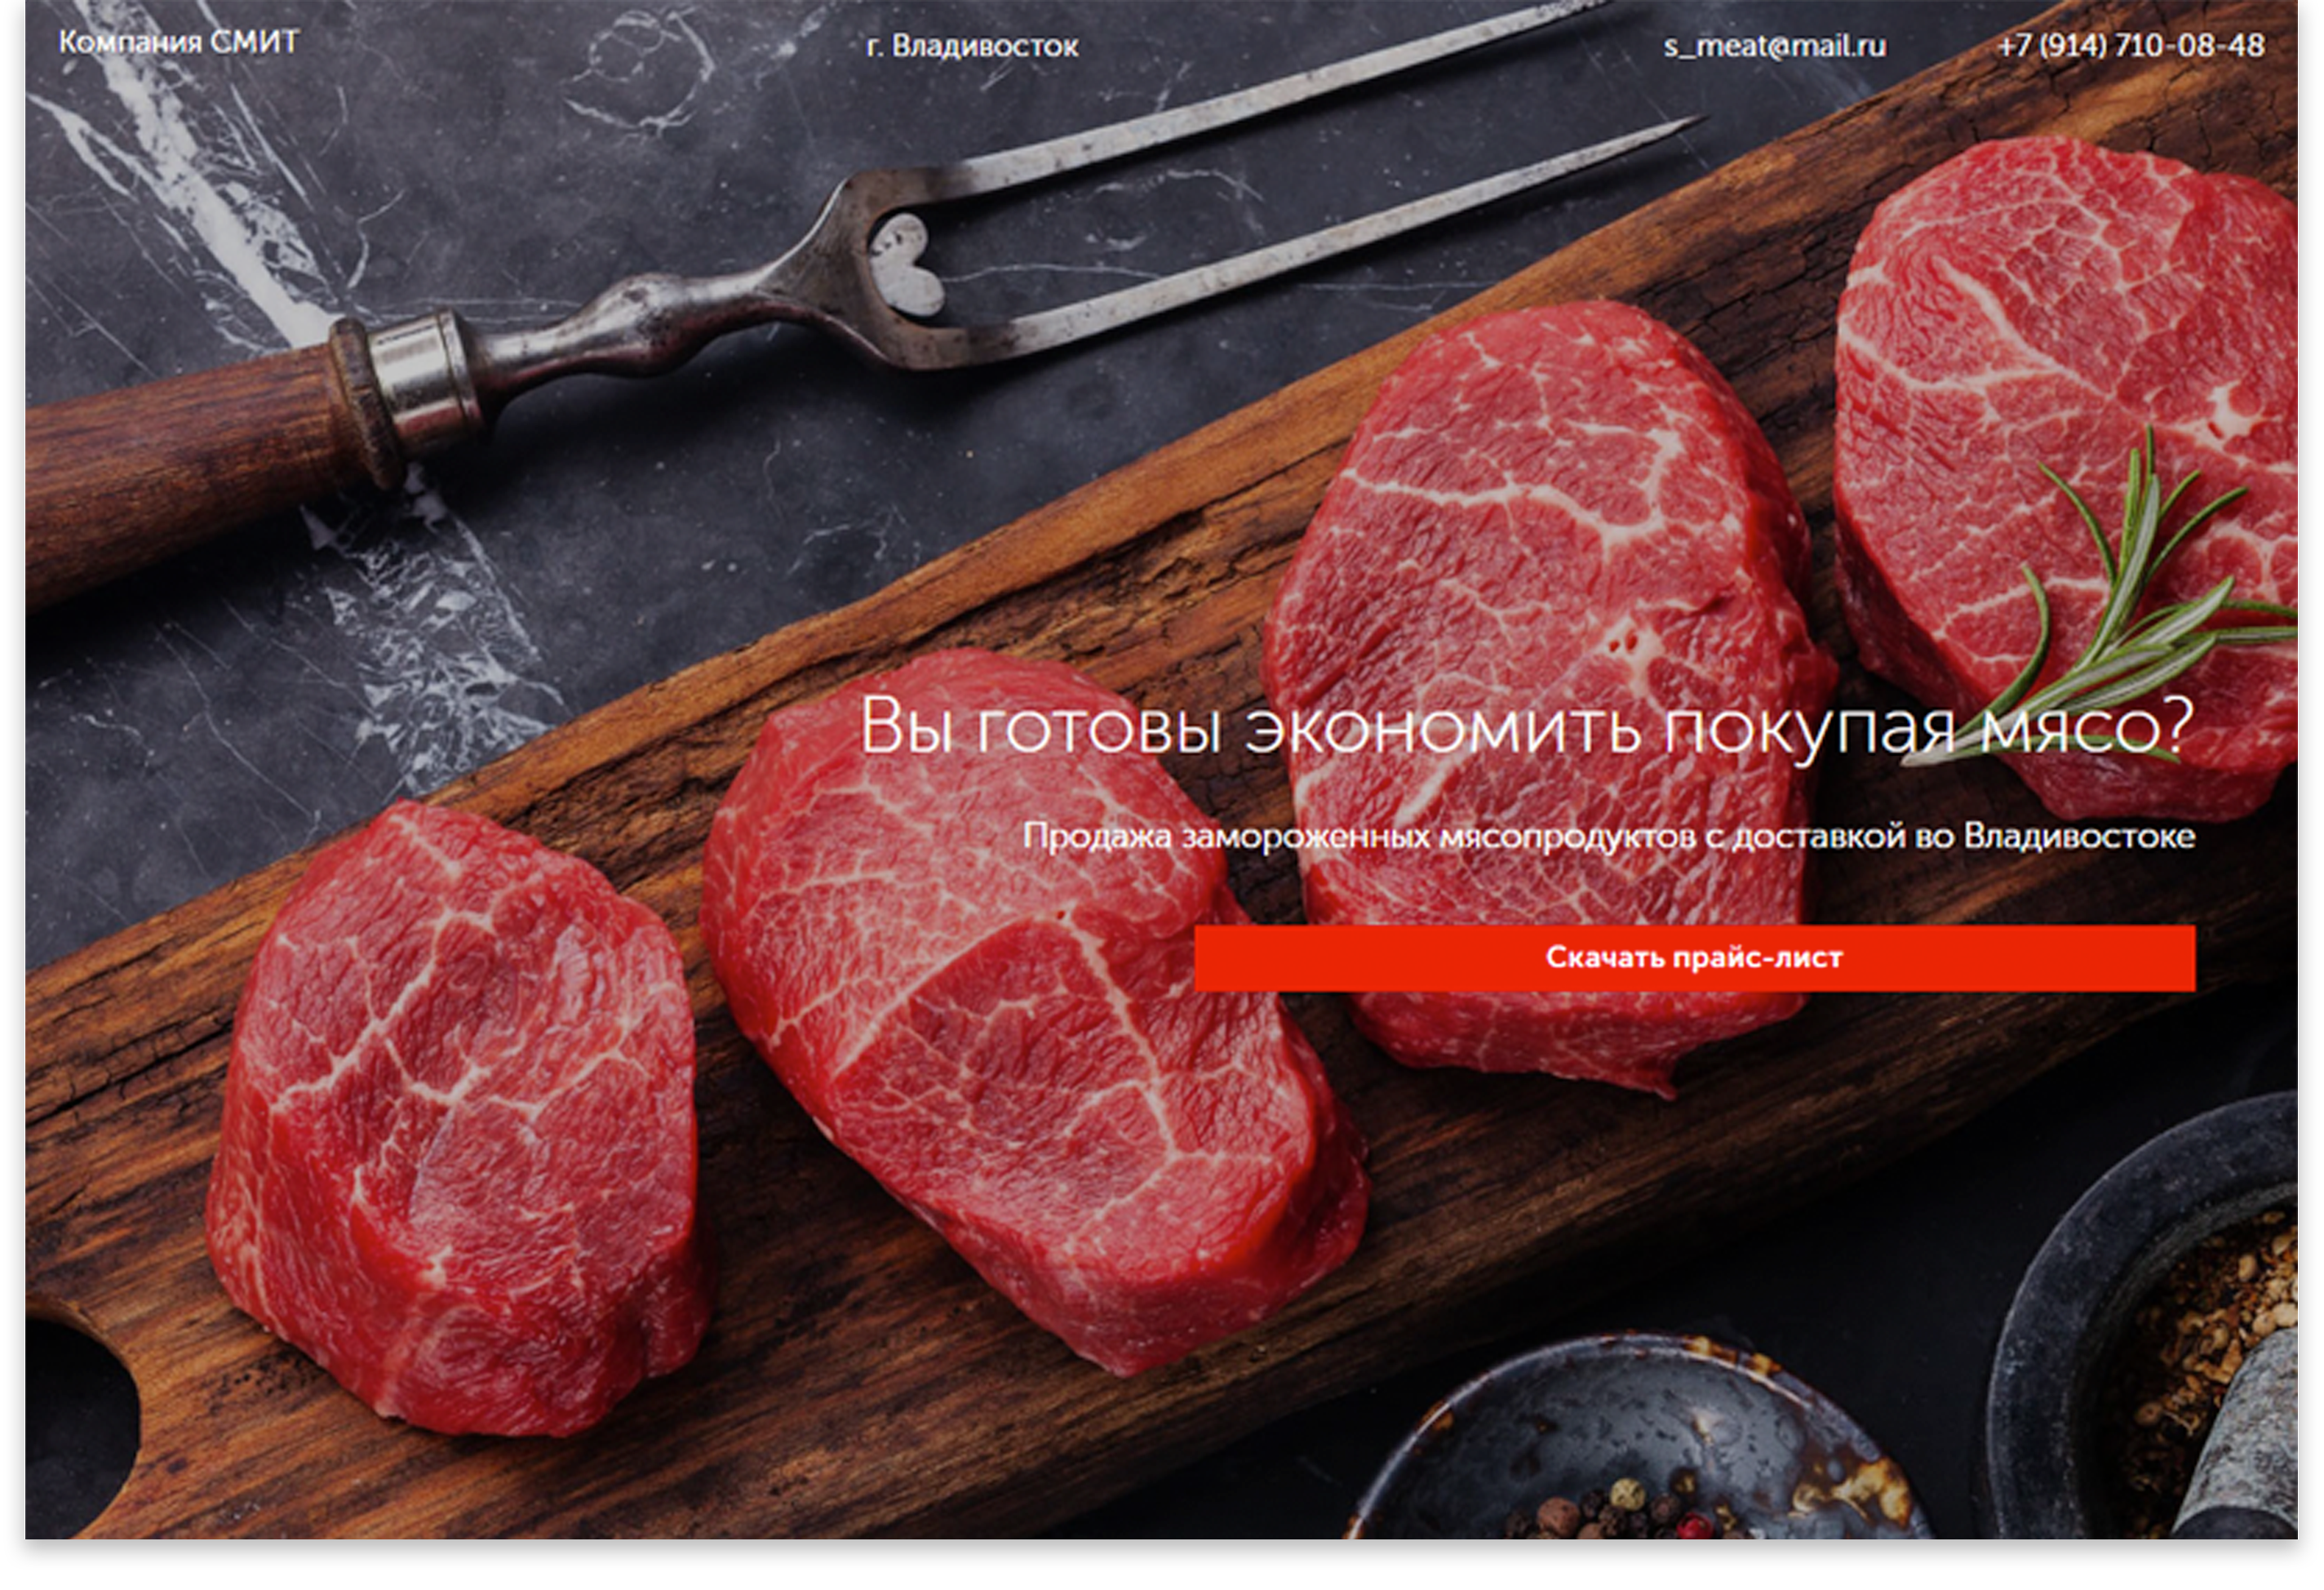 Компания СМИТЛендинг для продажи замороженных мясопродуктов во Владивостоке